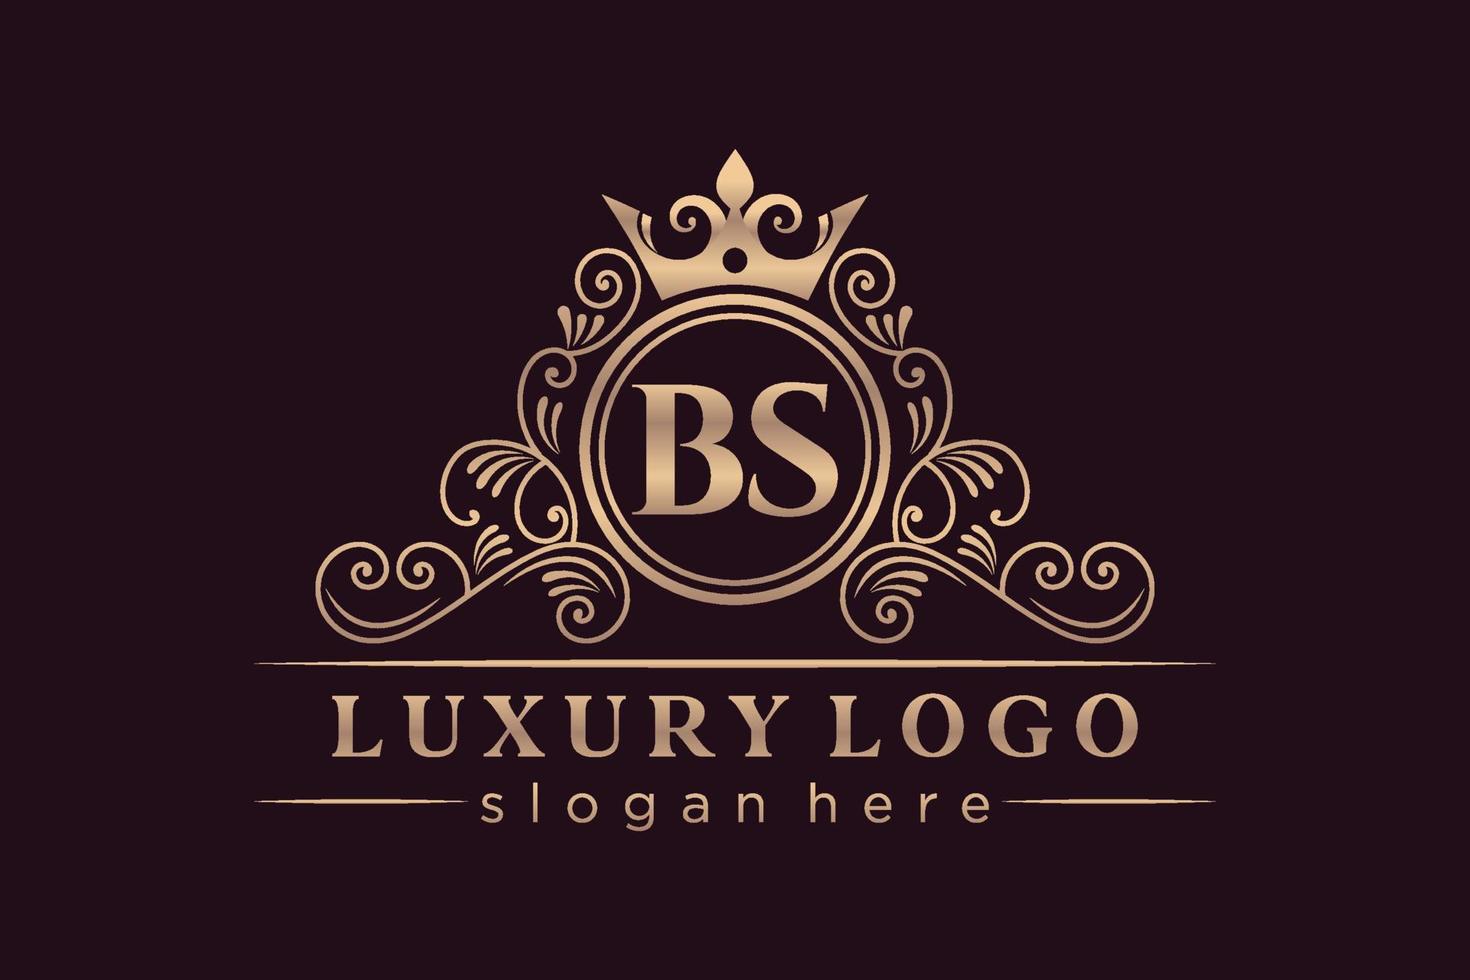 bs letra inicial oro caligráfico femenino floral dibujado a mano monograma heráldico antiguo estilo vintage diseño de logotipo de lujo vector premium